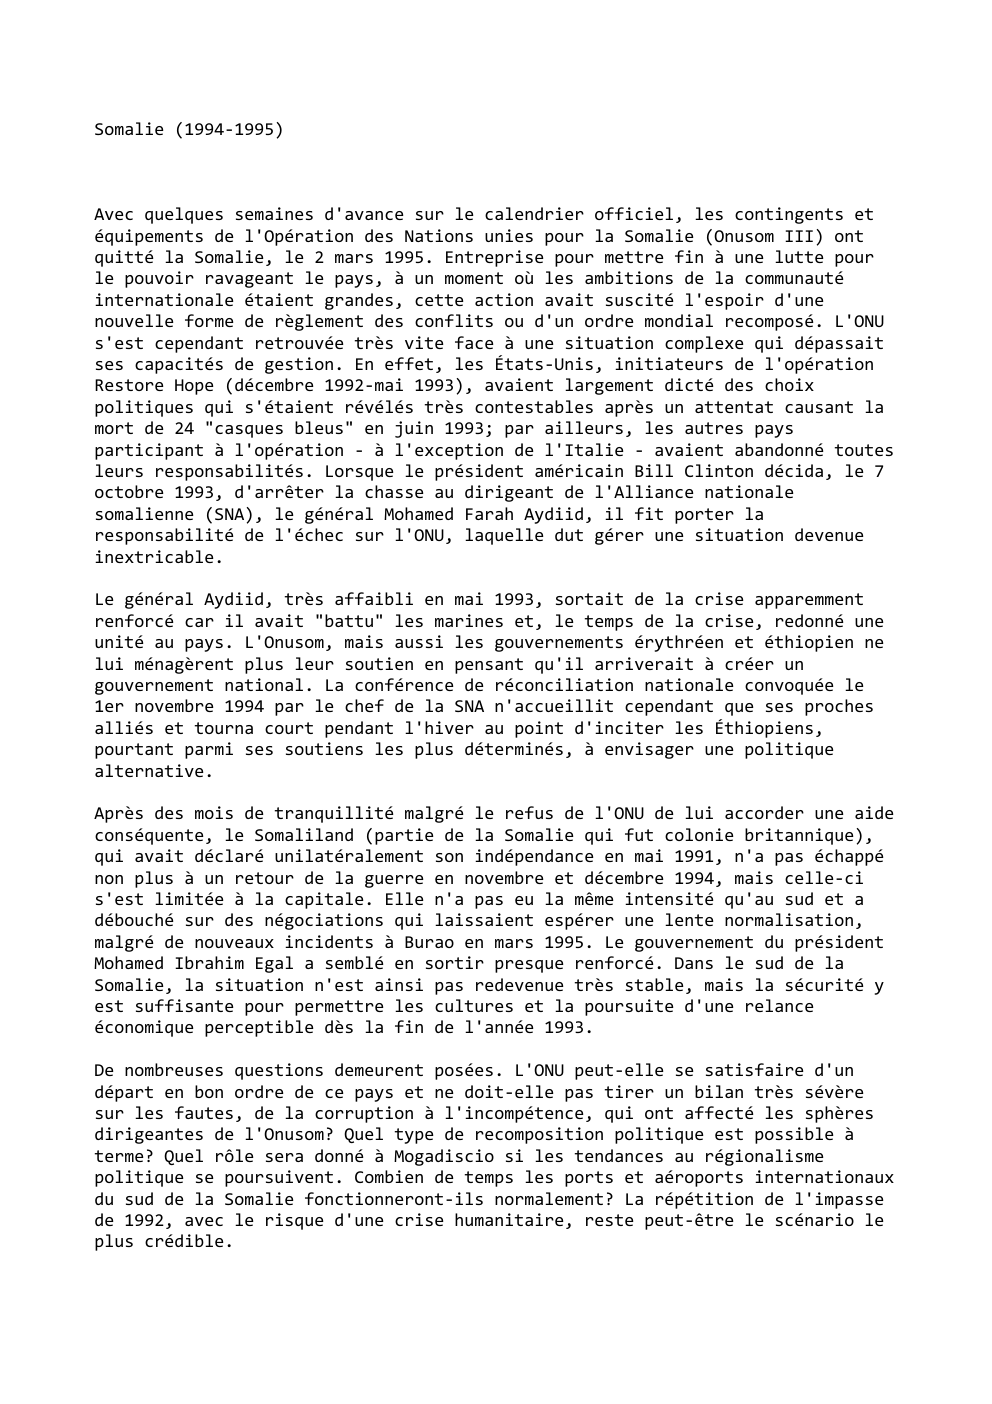 Prévisualisation du document Somalie (1994-1995)

Avec quelques semaines d'avance sur le calendrier officiel, les contingents et
équipements de l'Opération des Nations unies pour...